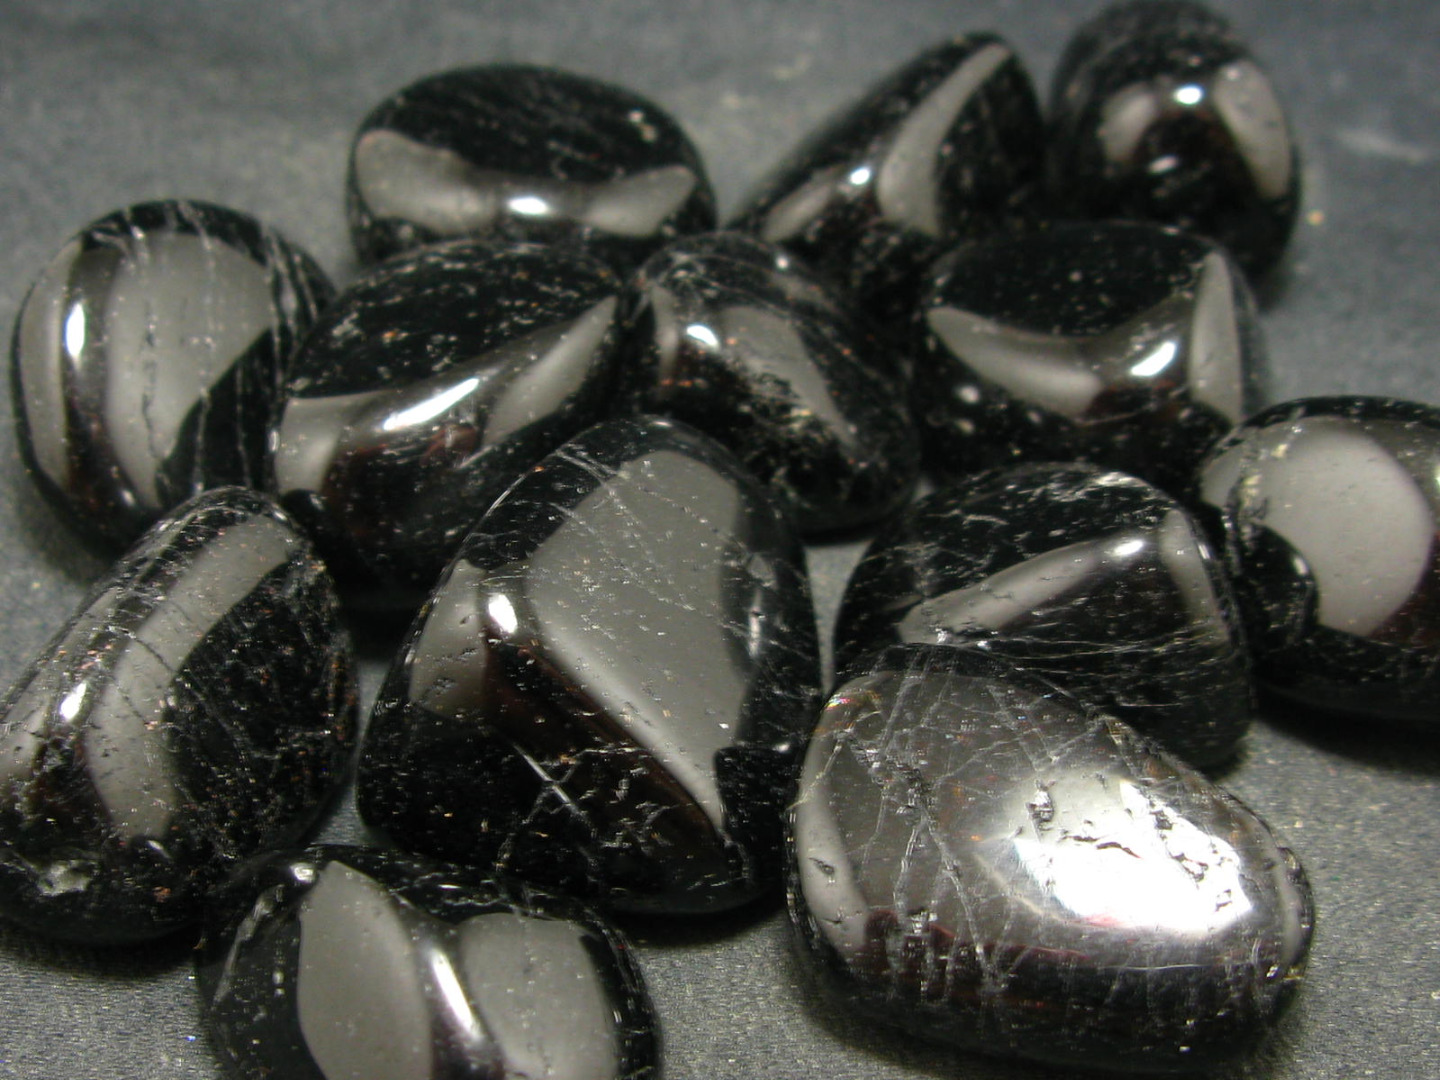 đá sapphire đen cho người sinh năm 1996